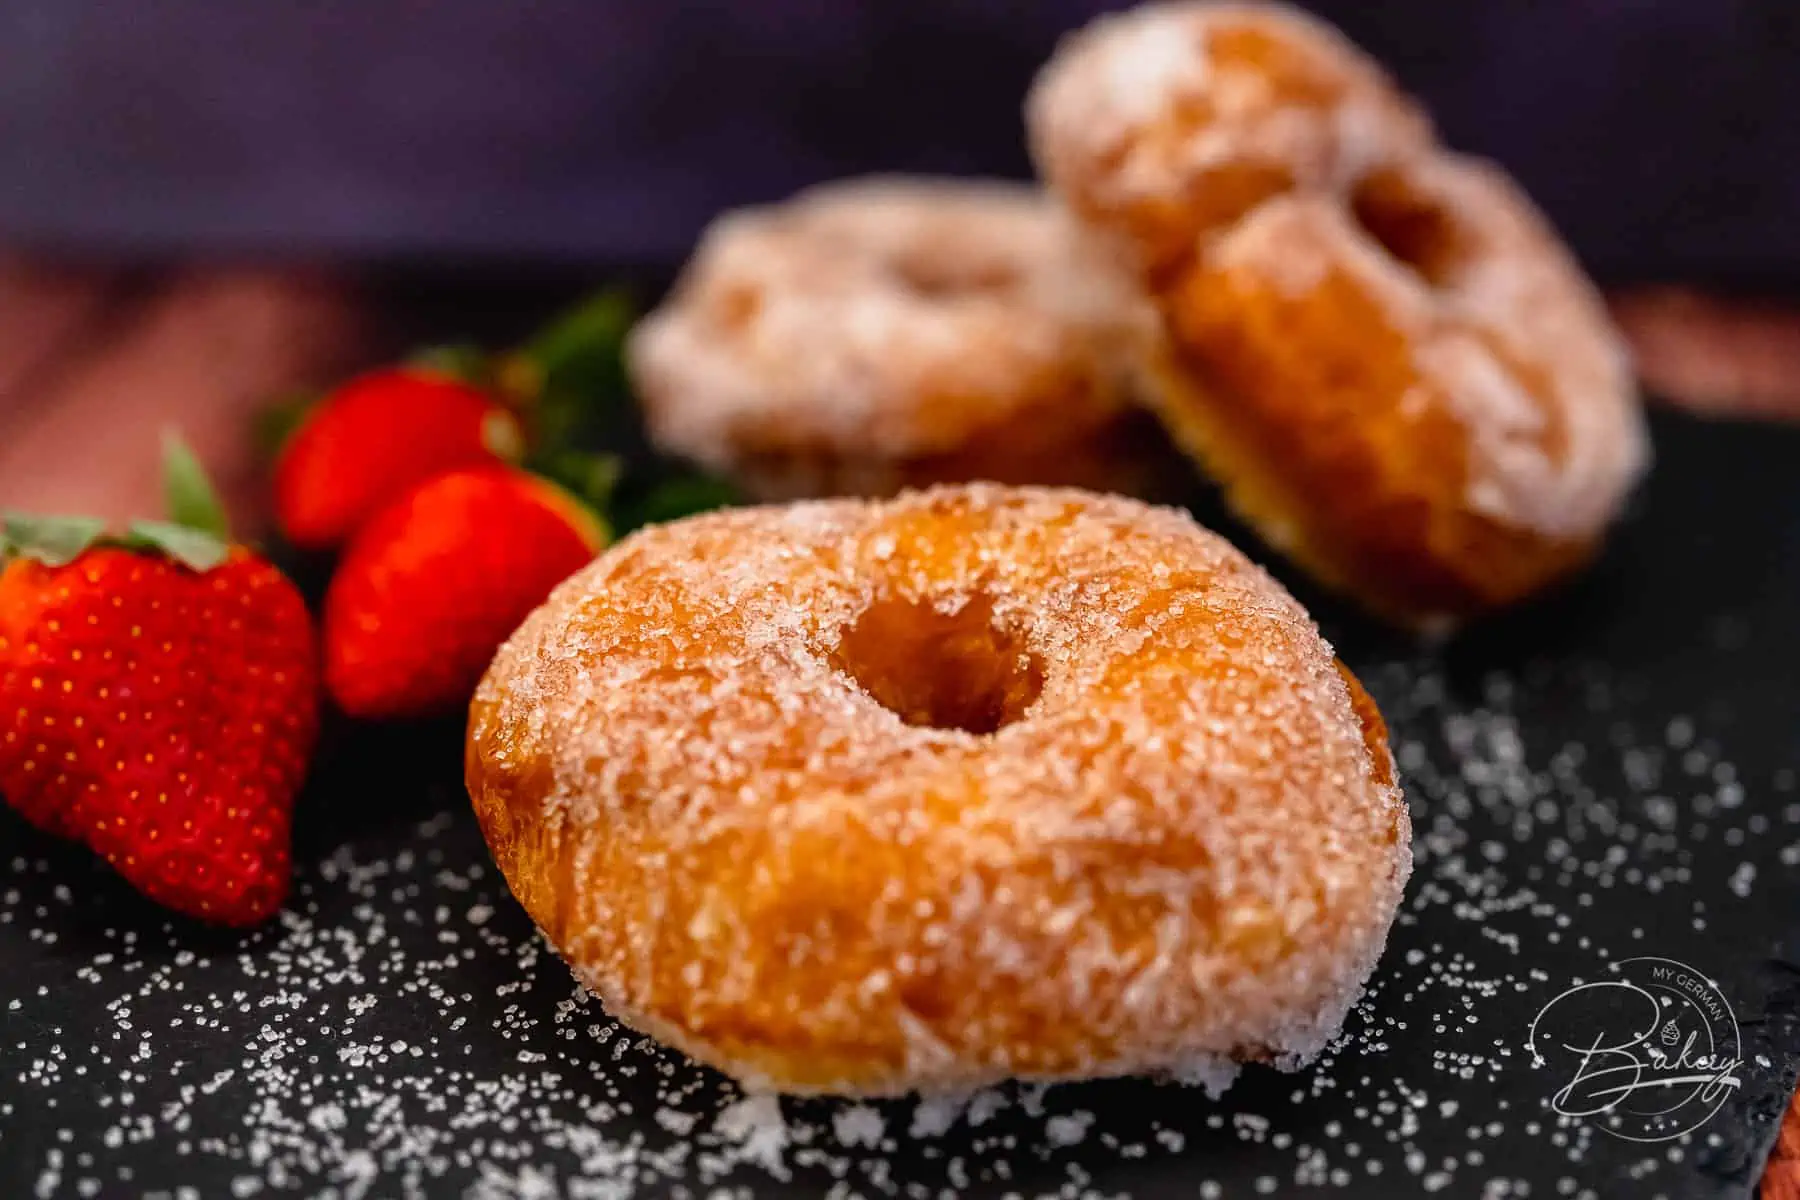 Donuts selber machen - einfaches Rezept - wie Berliner, Pfannkuchen, Krapfen - Donuts Rezept - einfach selber backen